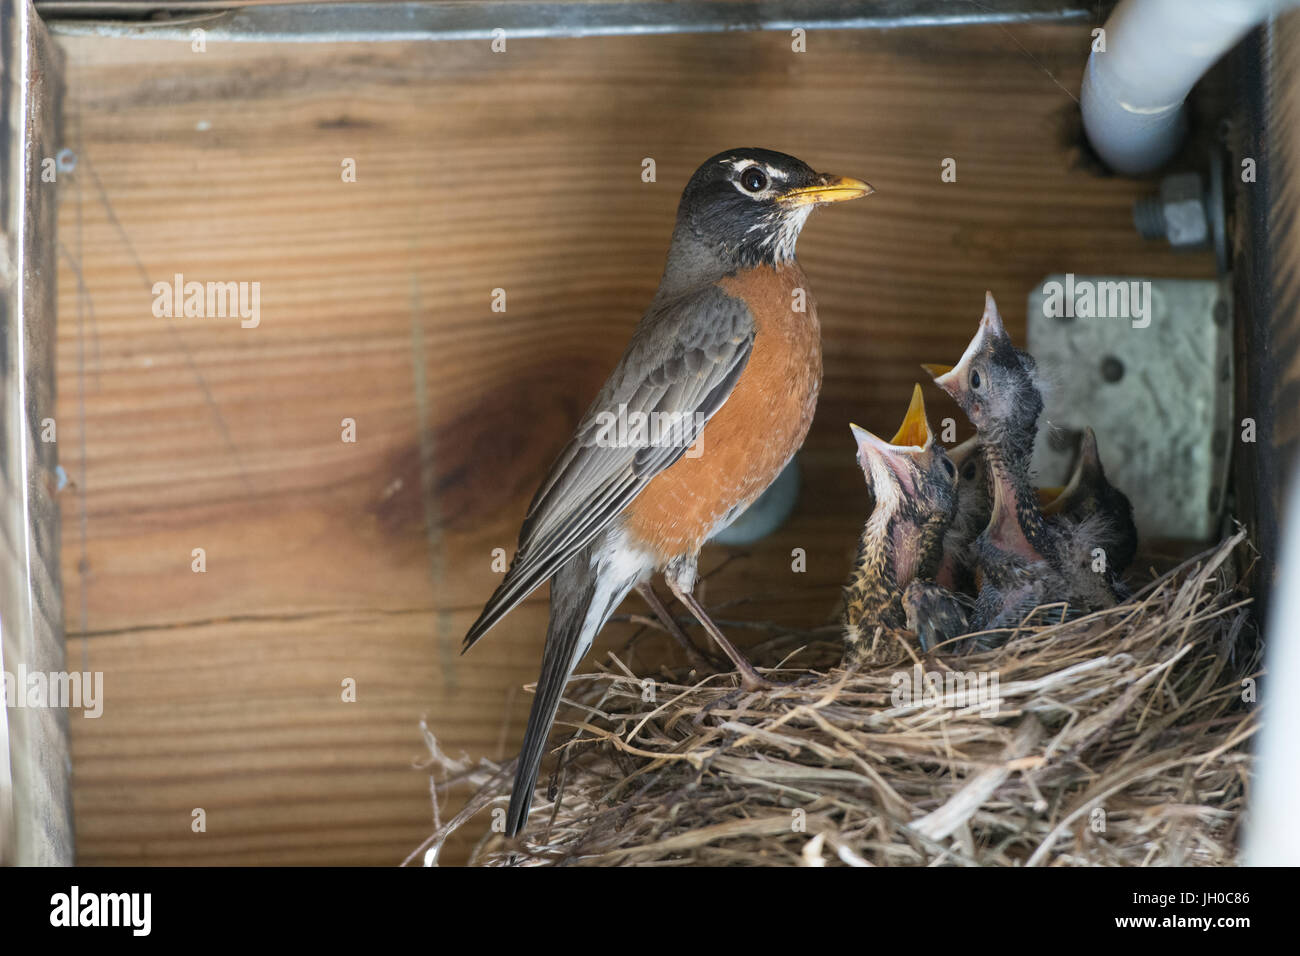 Robin feeding baby birds Stock Photo